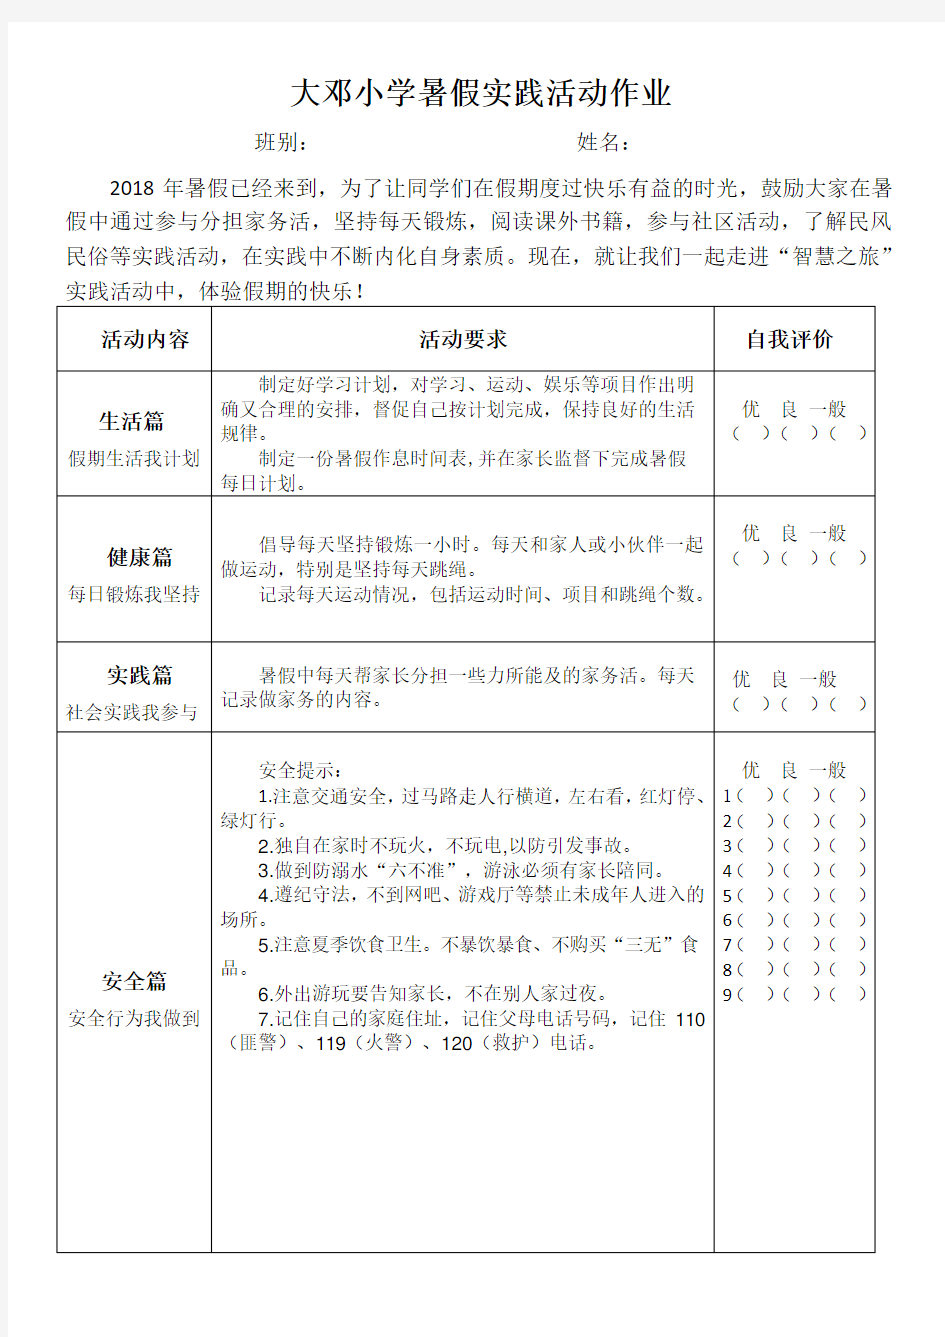 大邓小学暑假综合实践作业(打印版)